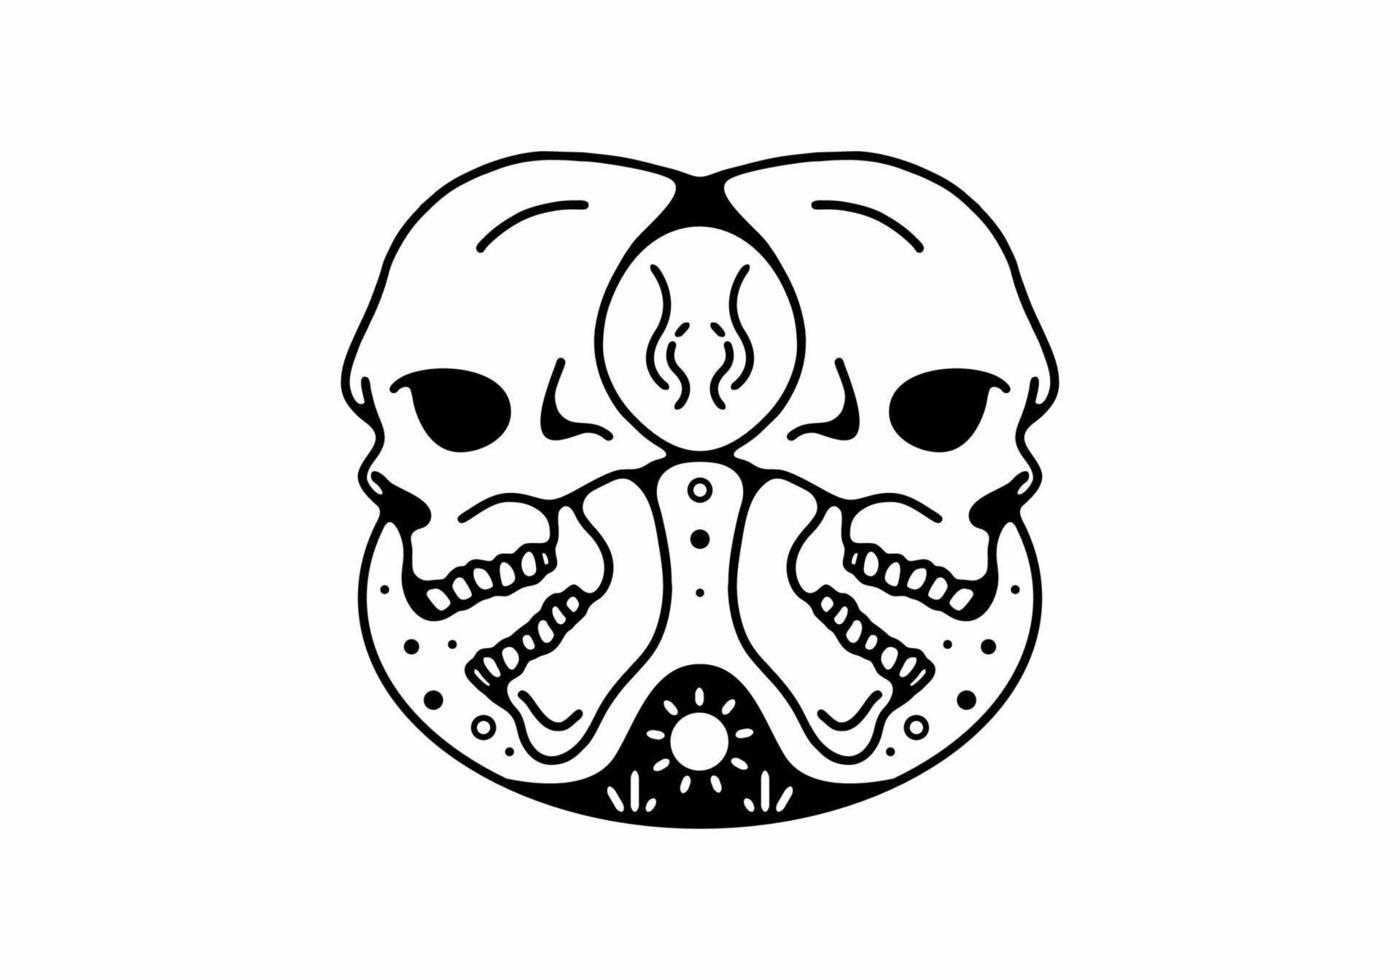 Twin of skull head line art illustration vector